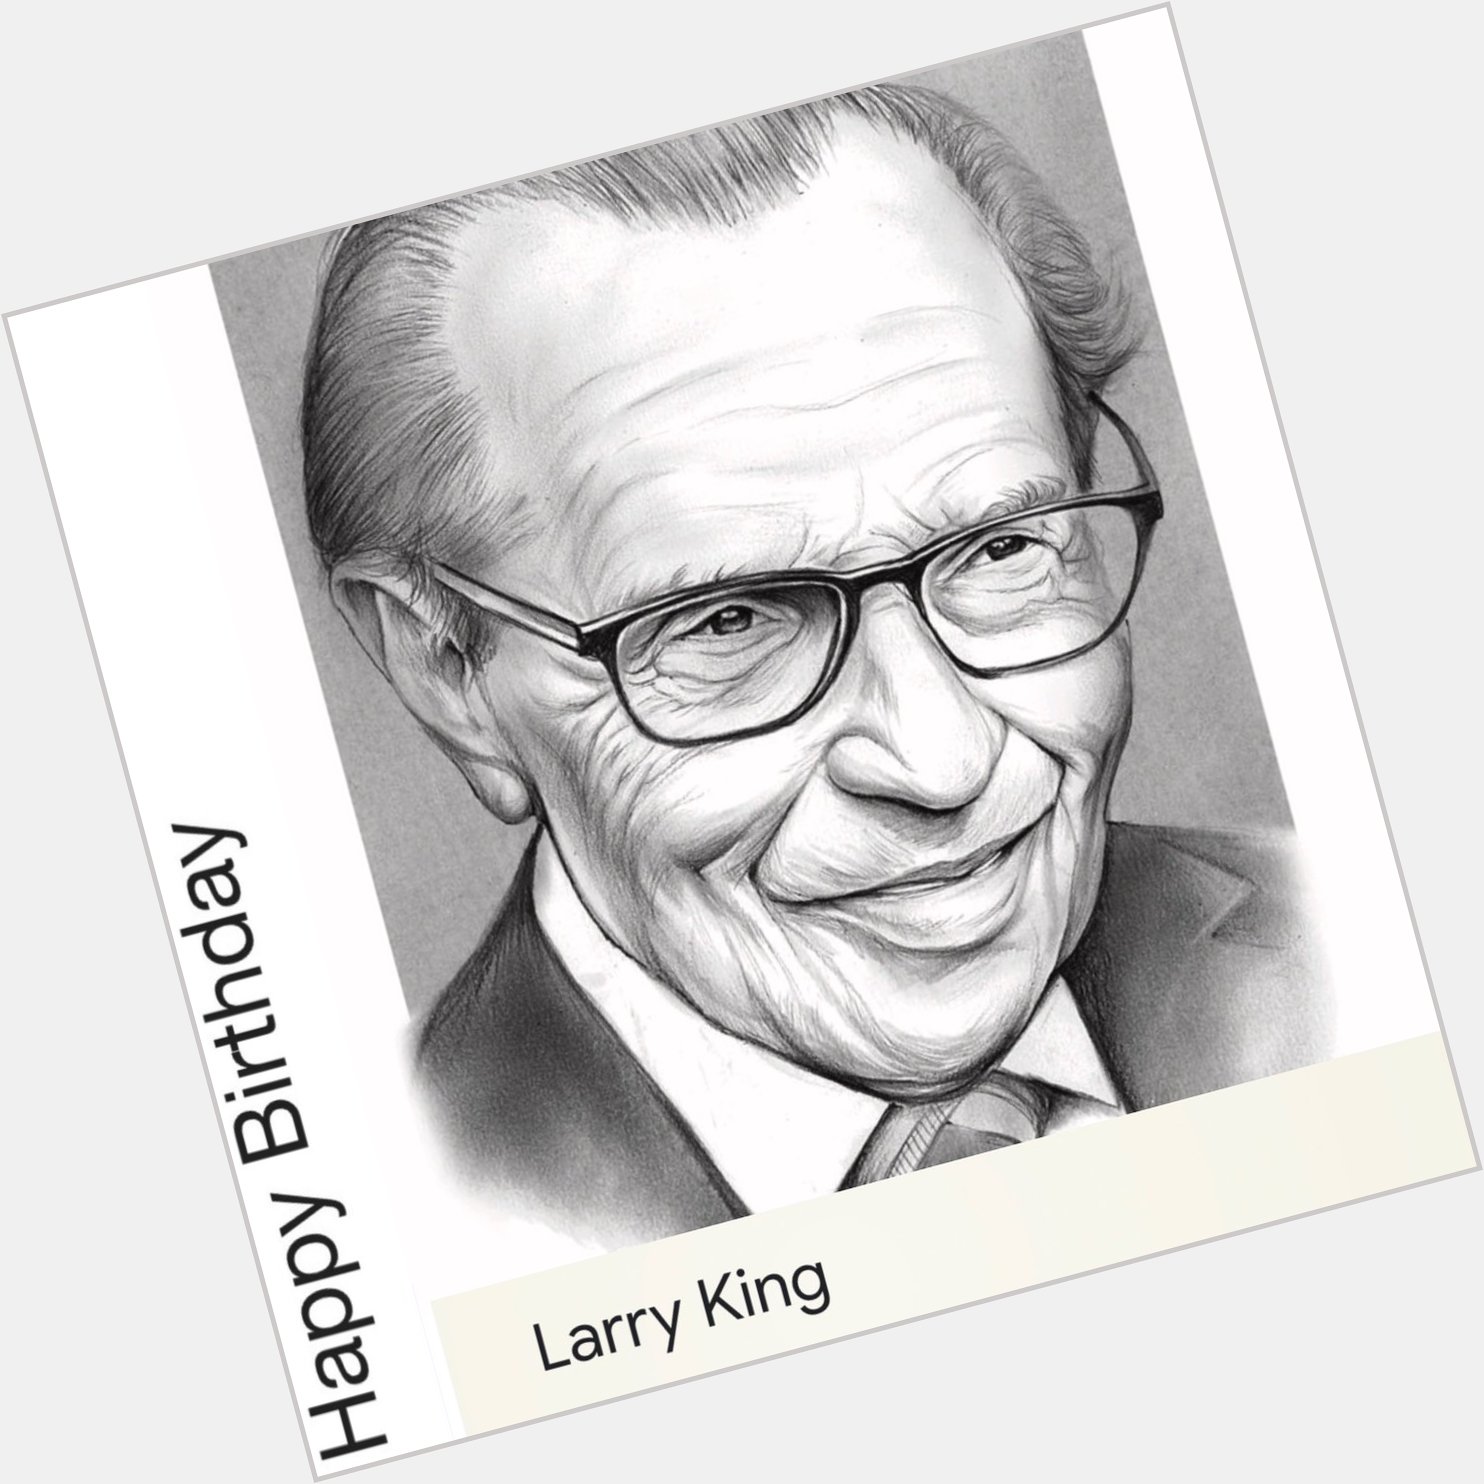 Happy birthday Larry King November 19, 1933 